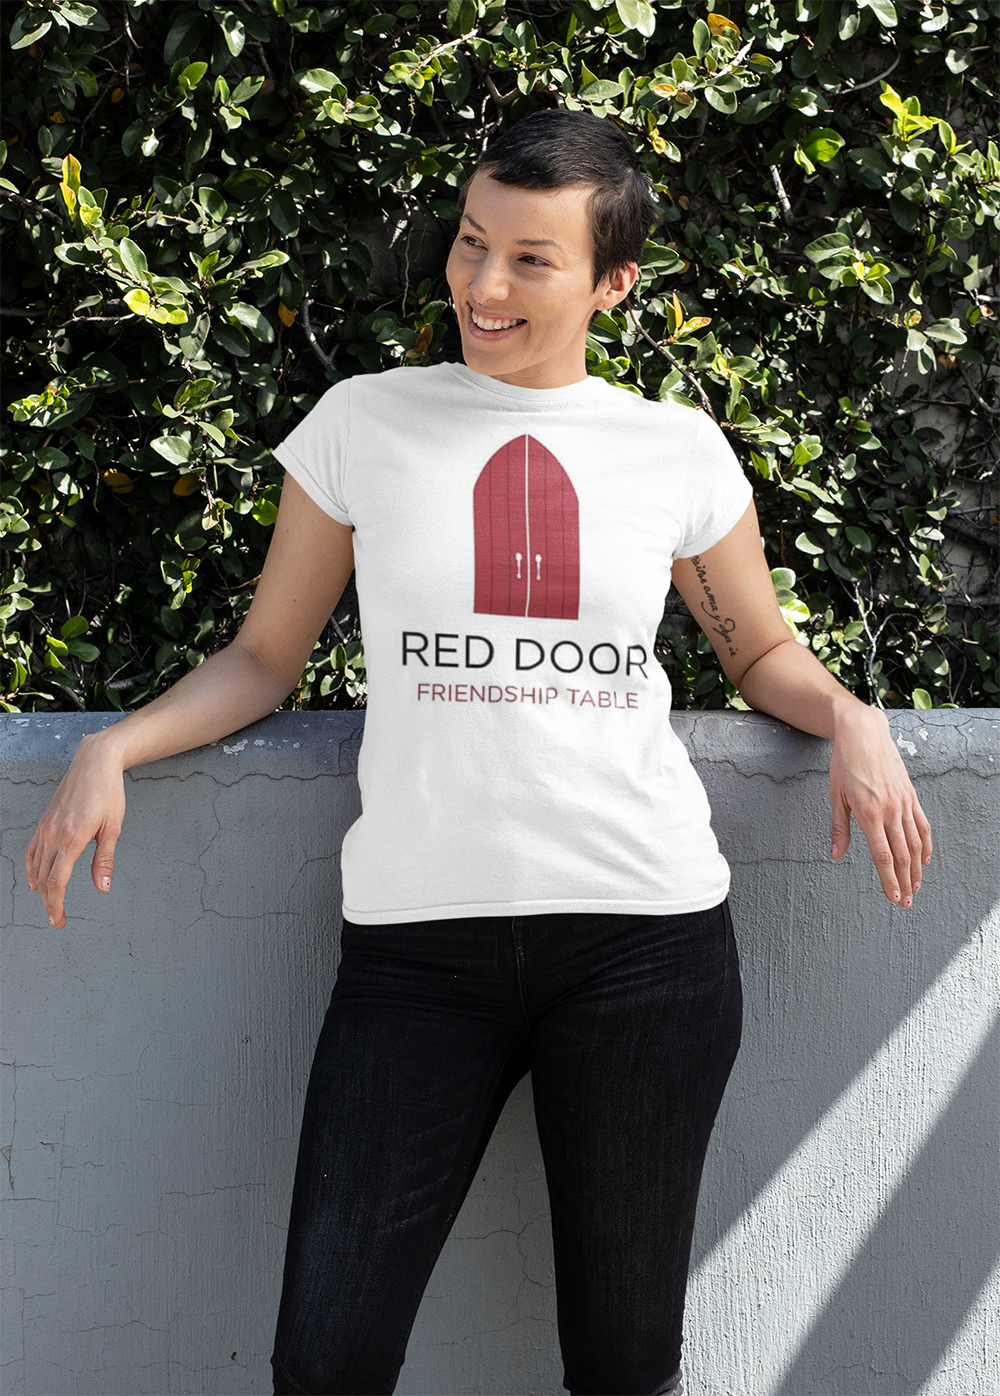 Red Door Friendship Table T-shirt Design